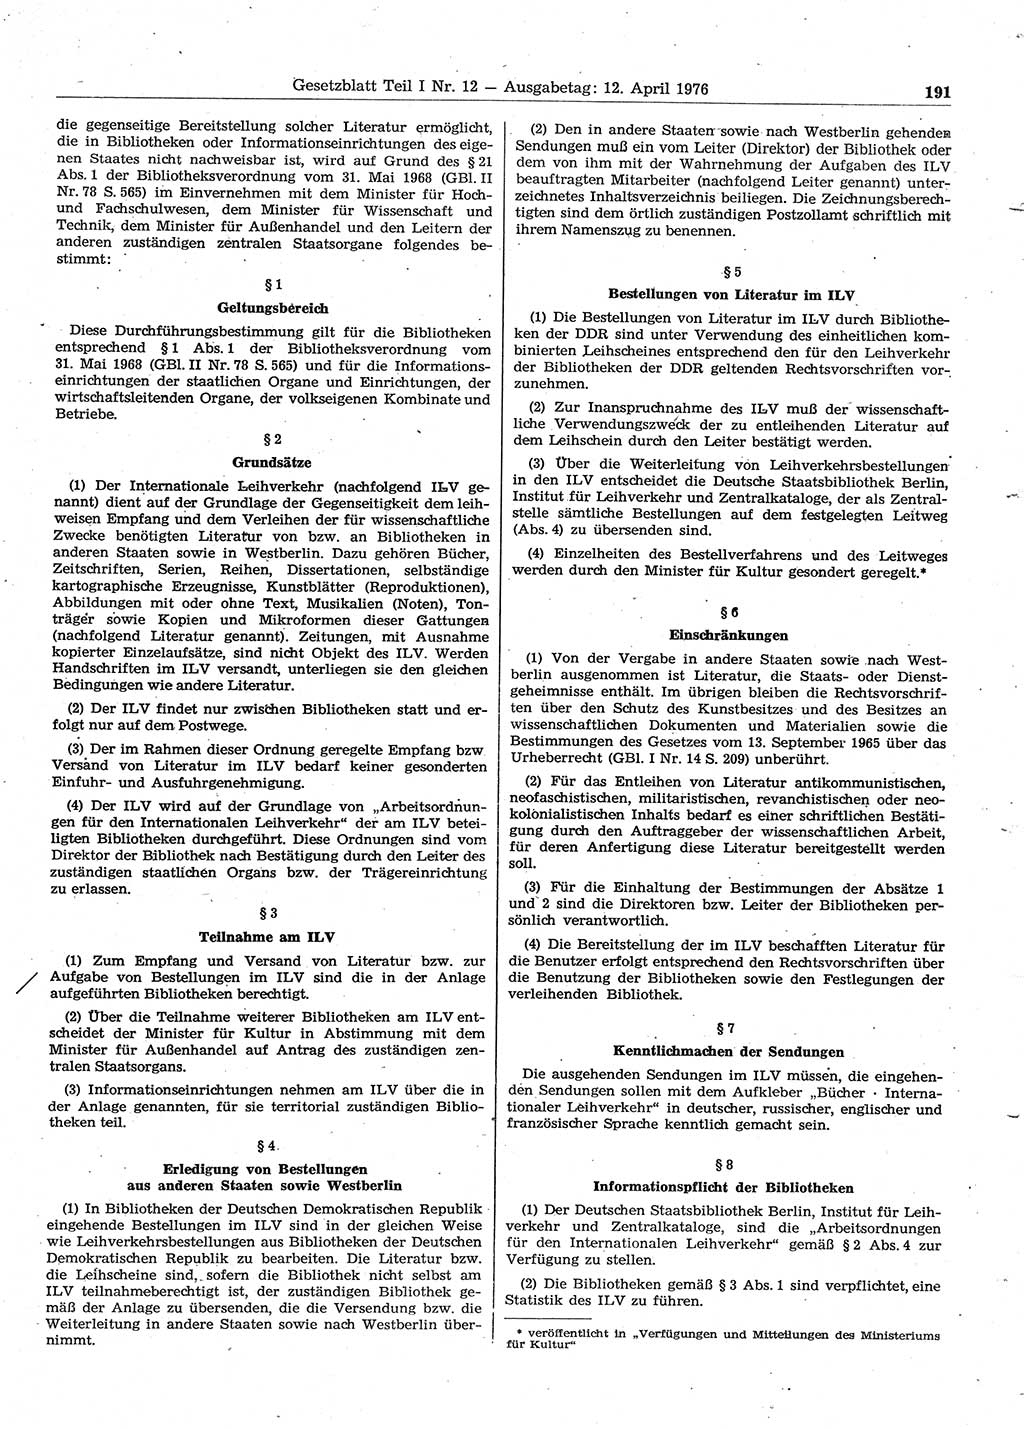 Gesetzblatt (GBl.) der Deutschen Demokratischen Republik (DDR) Teil Ⅰ 1976, Seite 191 (GBl. DDR Ⅰ 1976, S. 191)